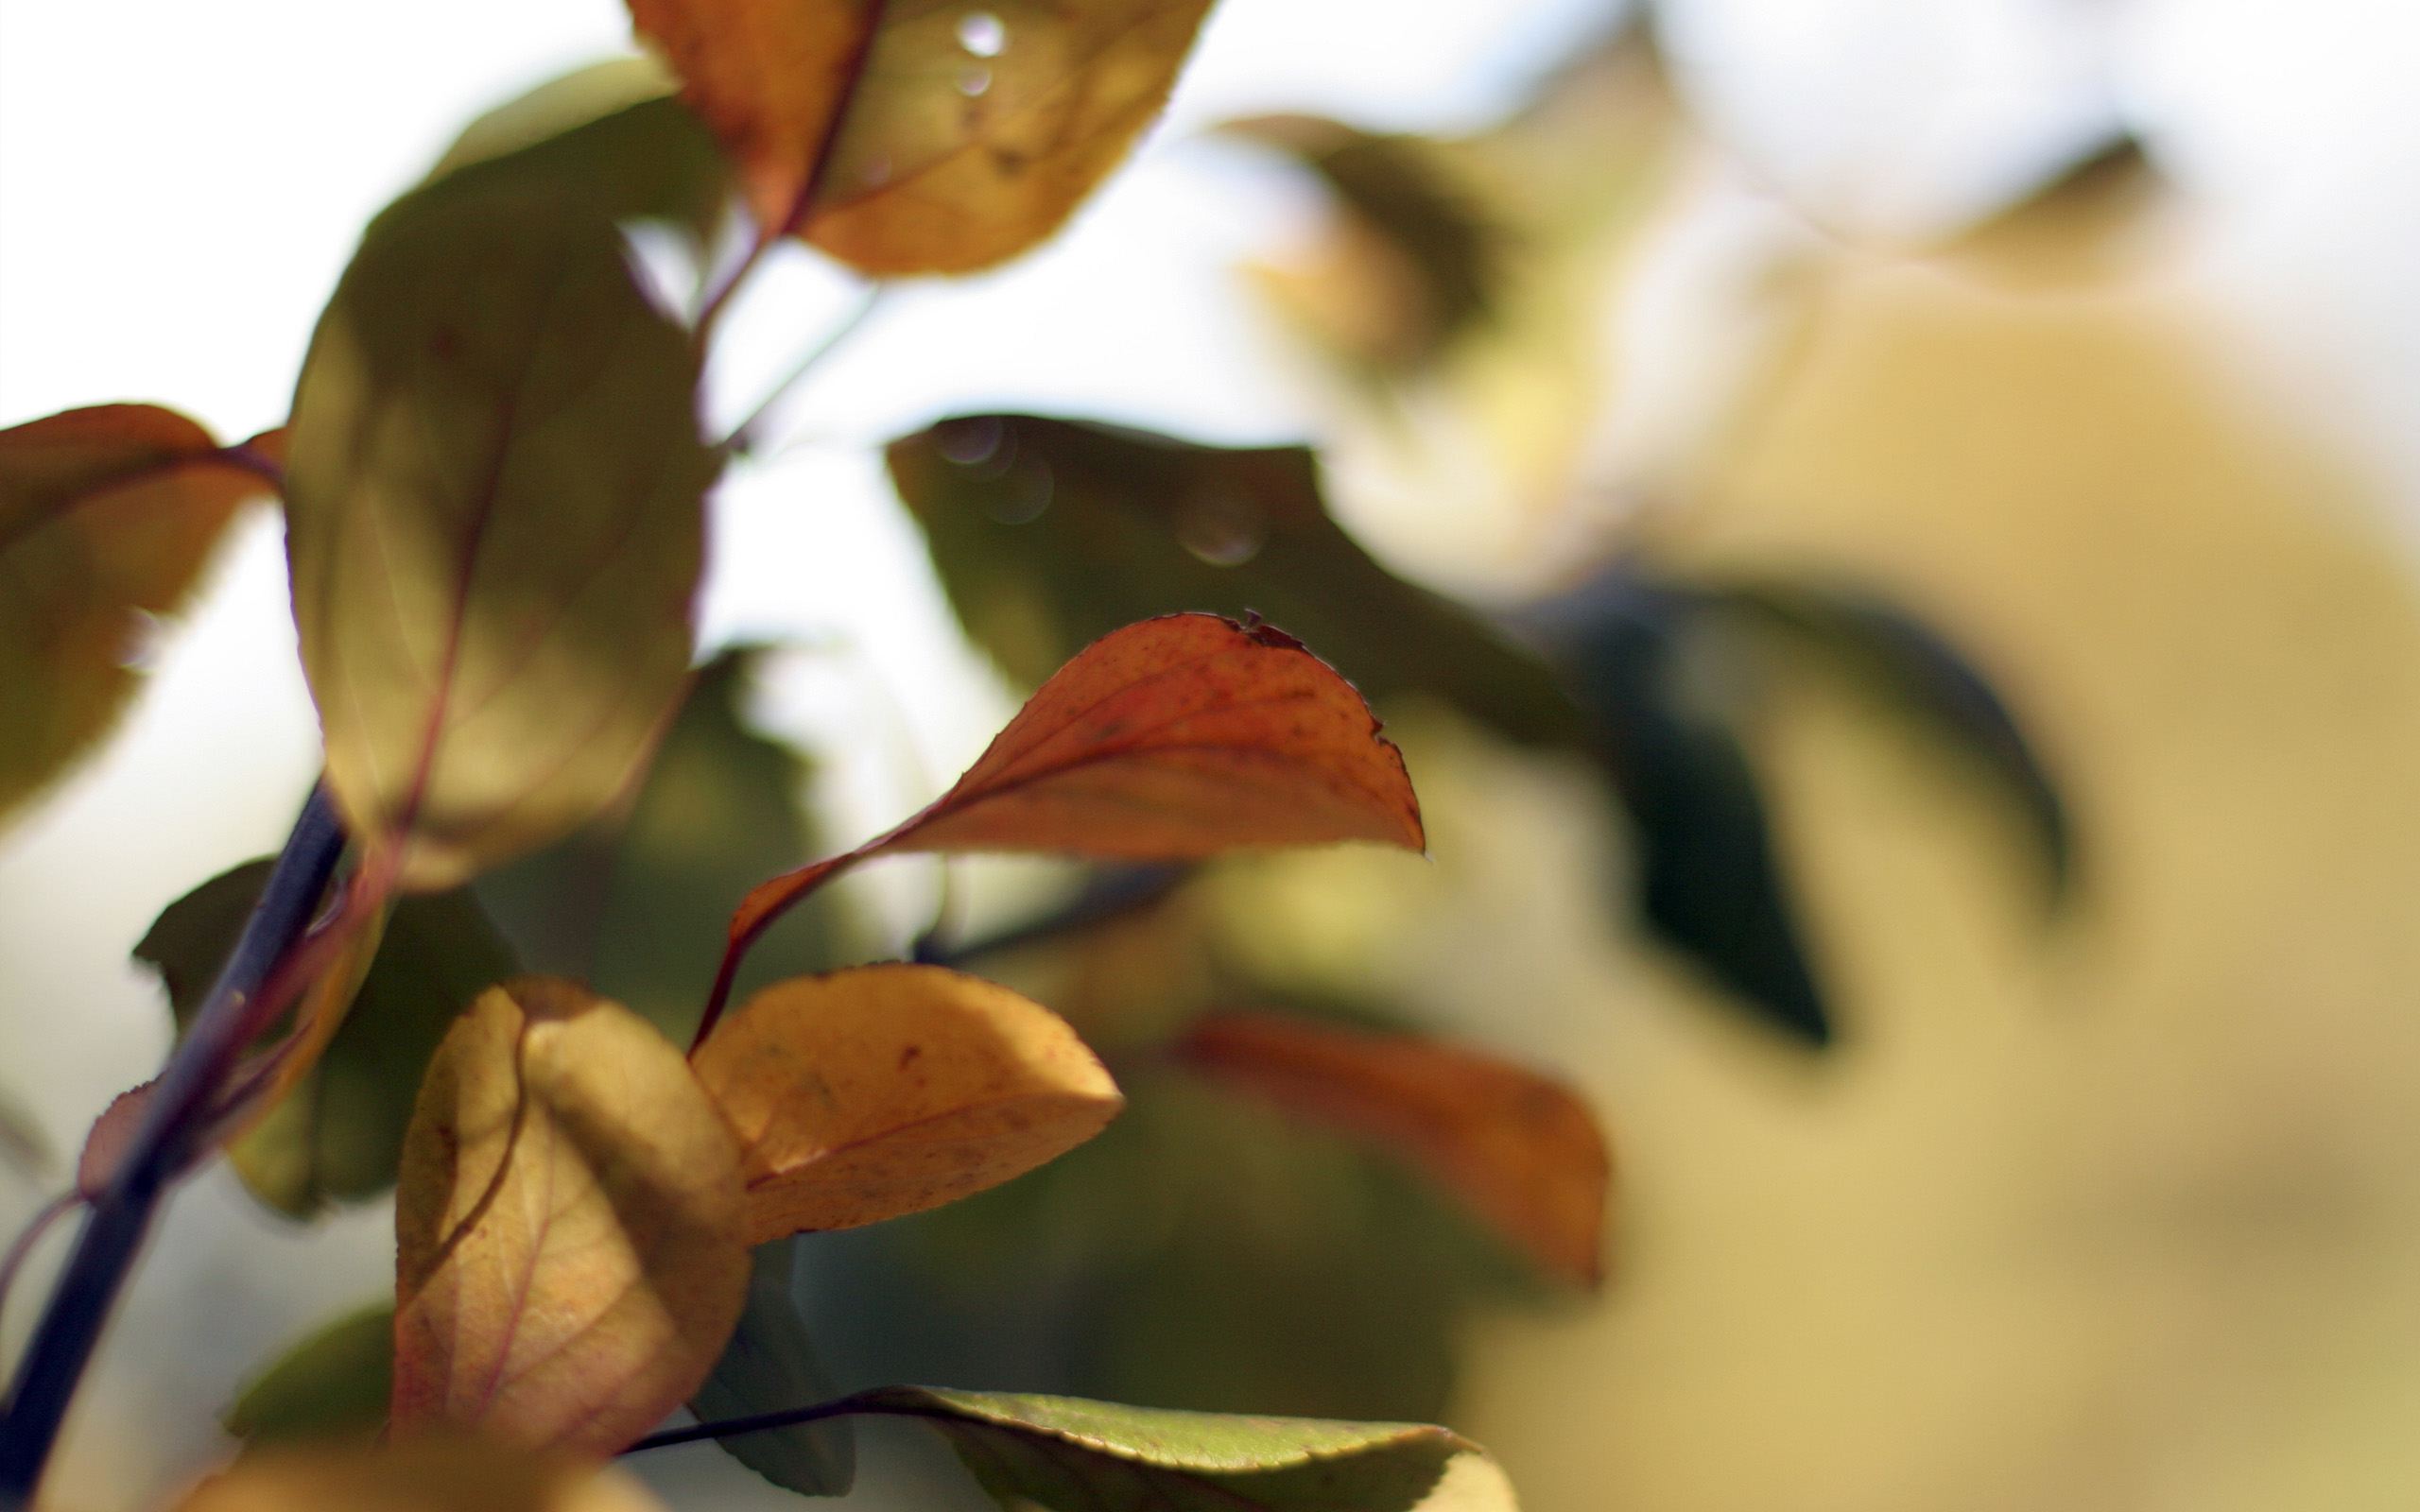 Nature Leaf HD Wallpaper | Background Image